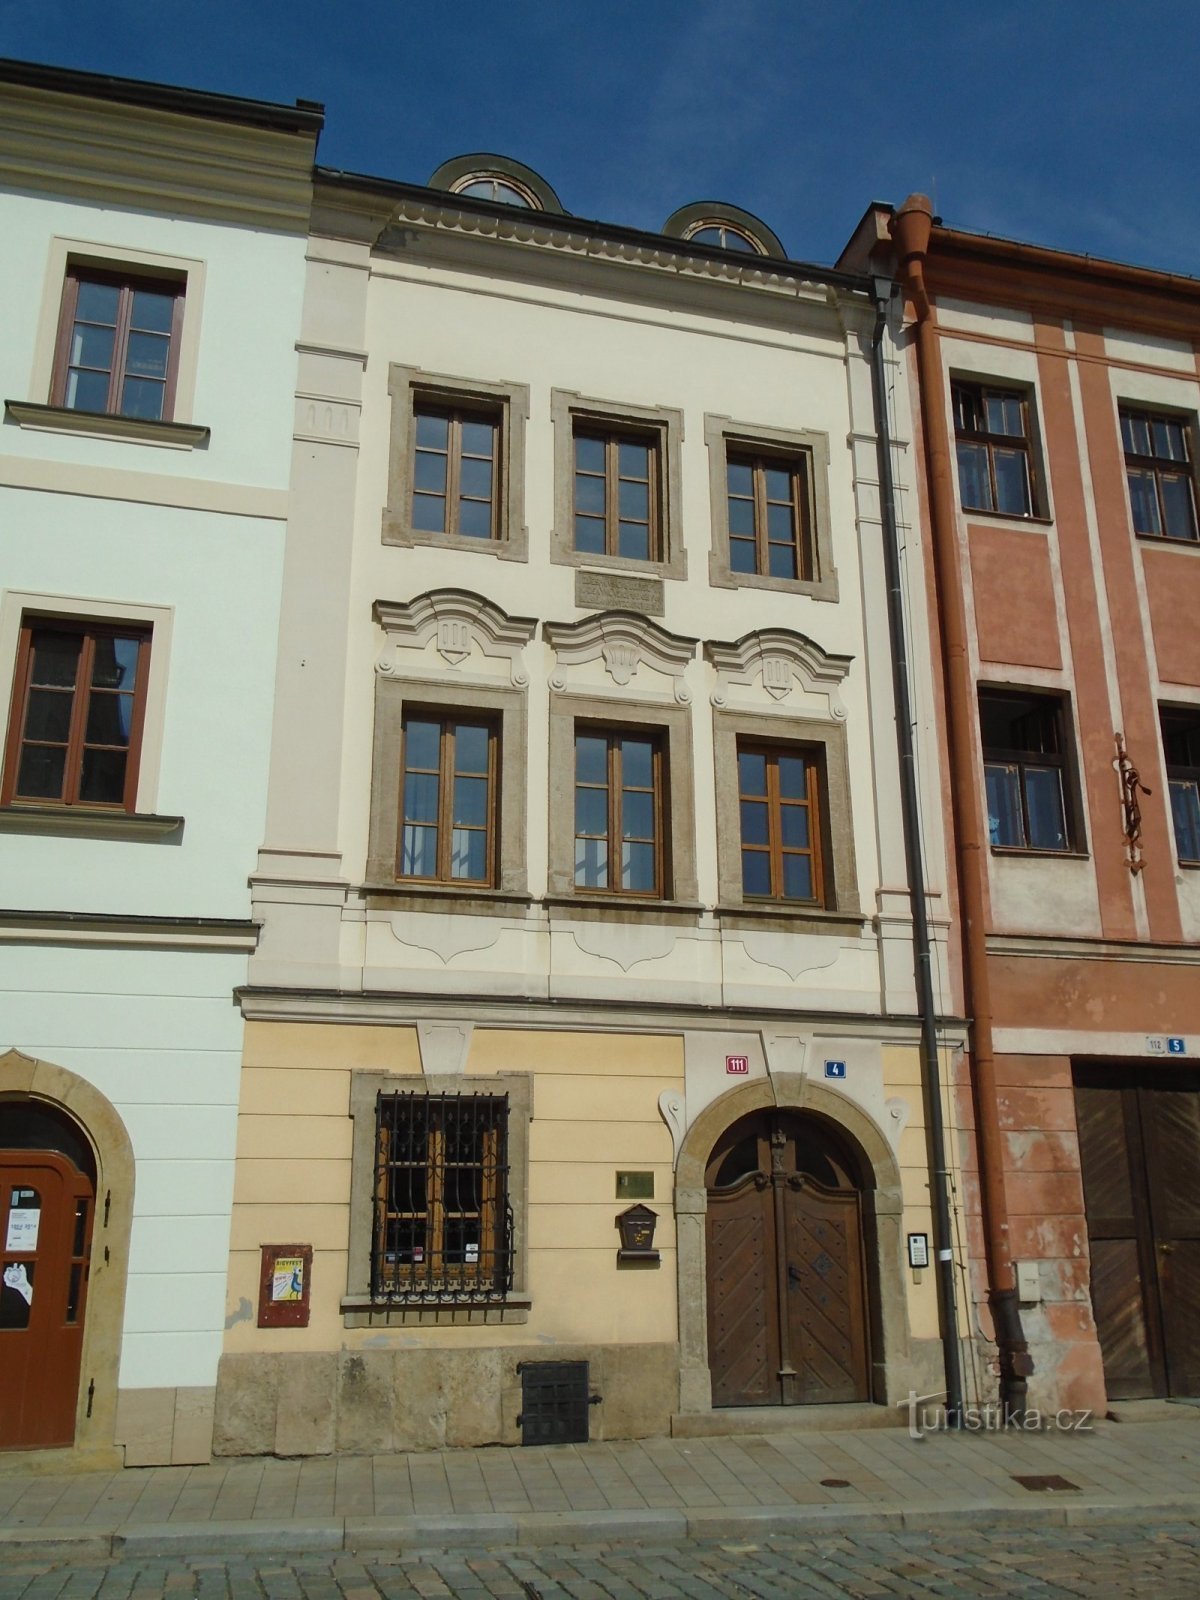 Malé náměstí čp. 111 (Hradec Králové, 16.9.2018)